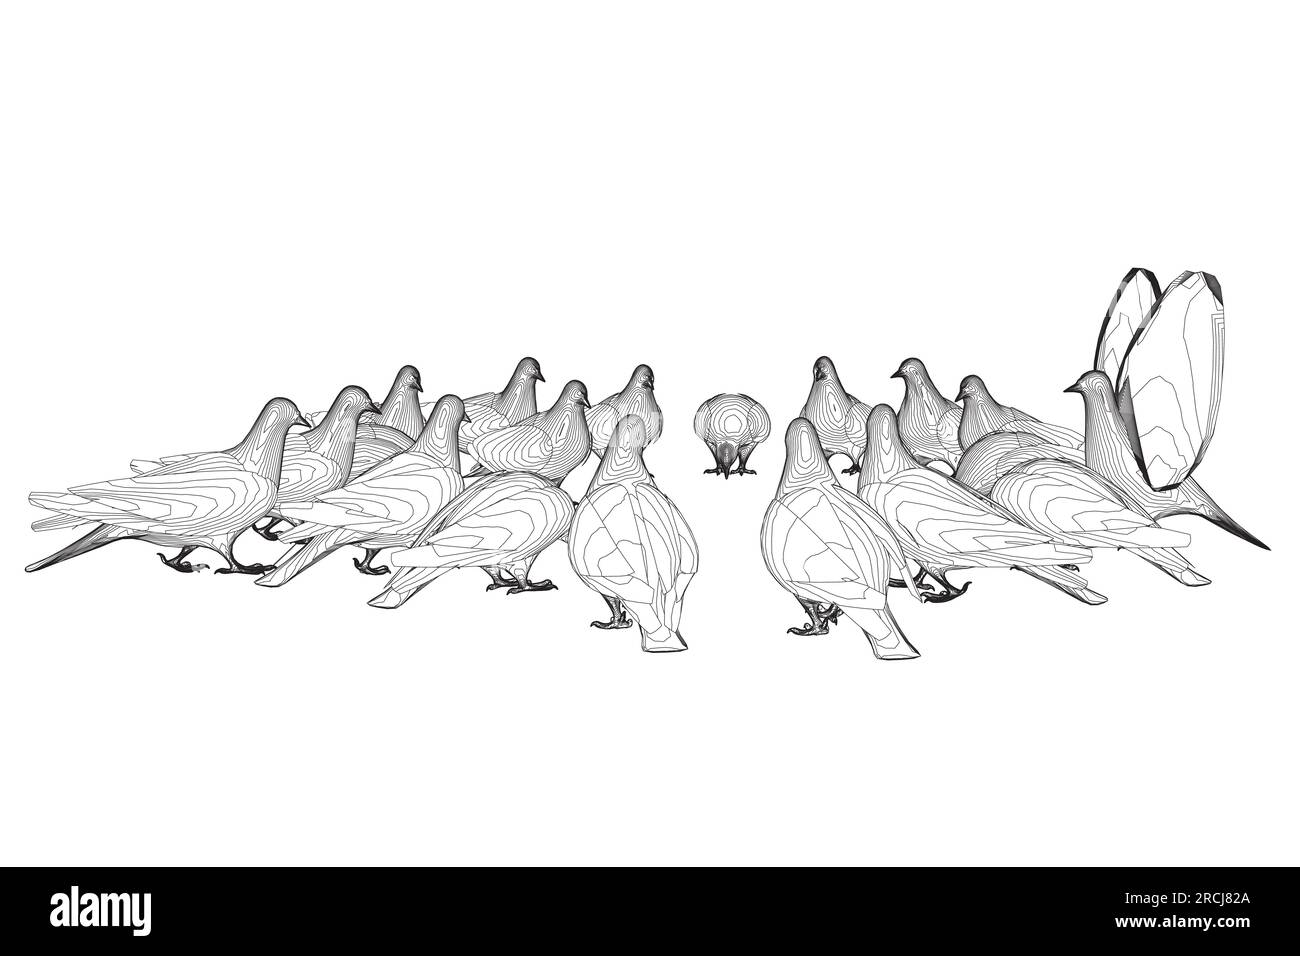 Taubenvogelkontur-Sitzen. Flaches Cartoon-Design. Vogelsymbol für Kontur. Süße Taubenschablone. Vektordarstellung isoliert auf weißem Hintergrund. Stock Vektor